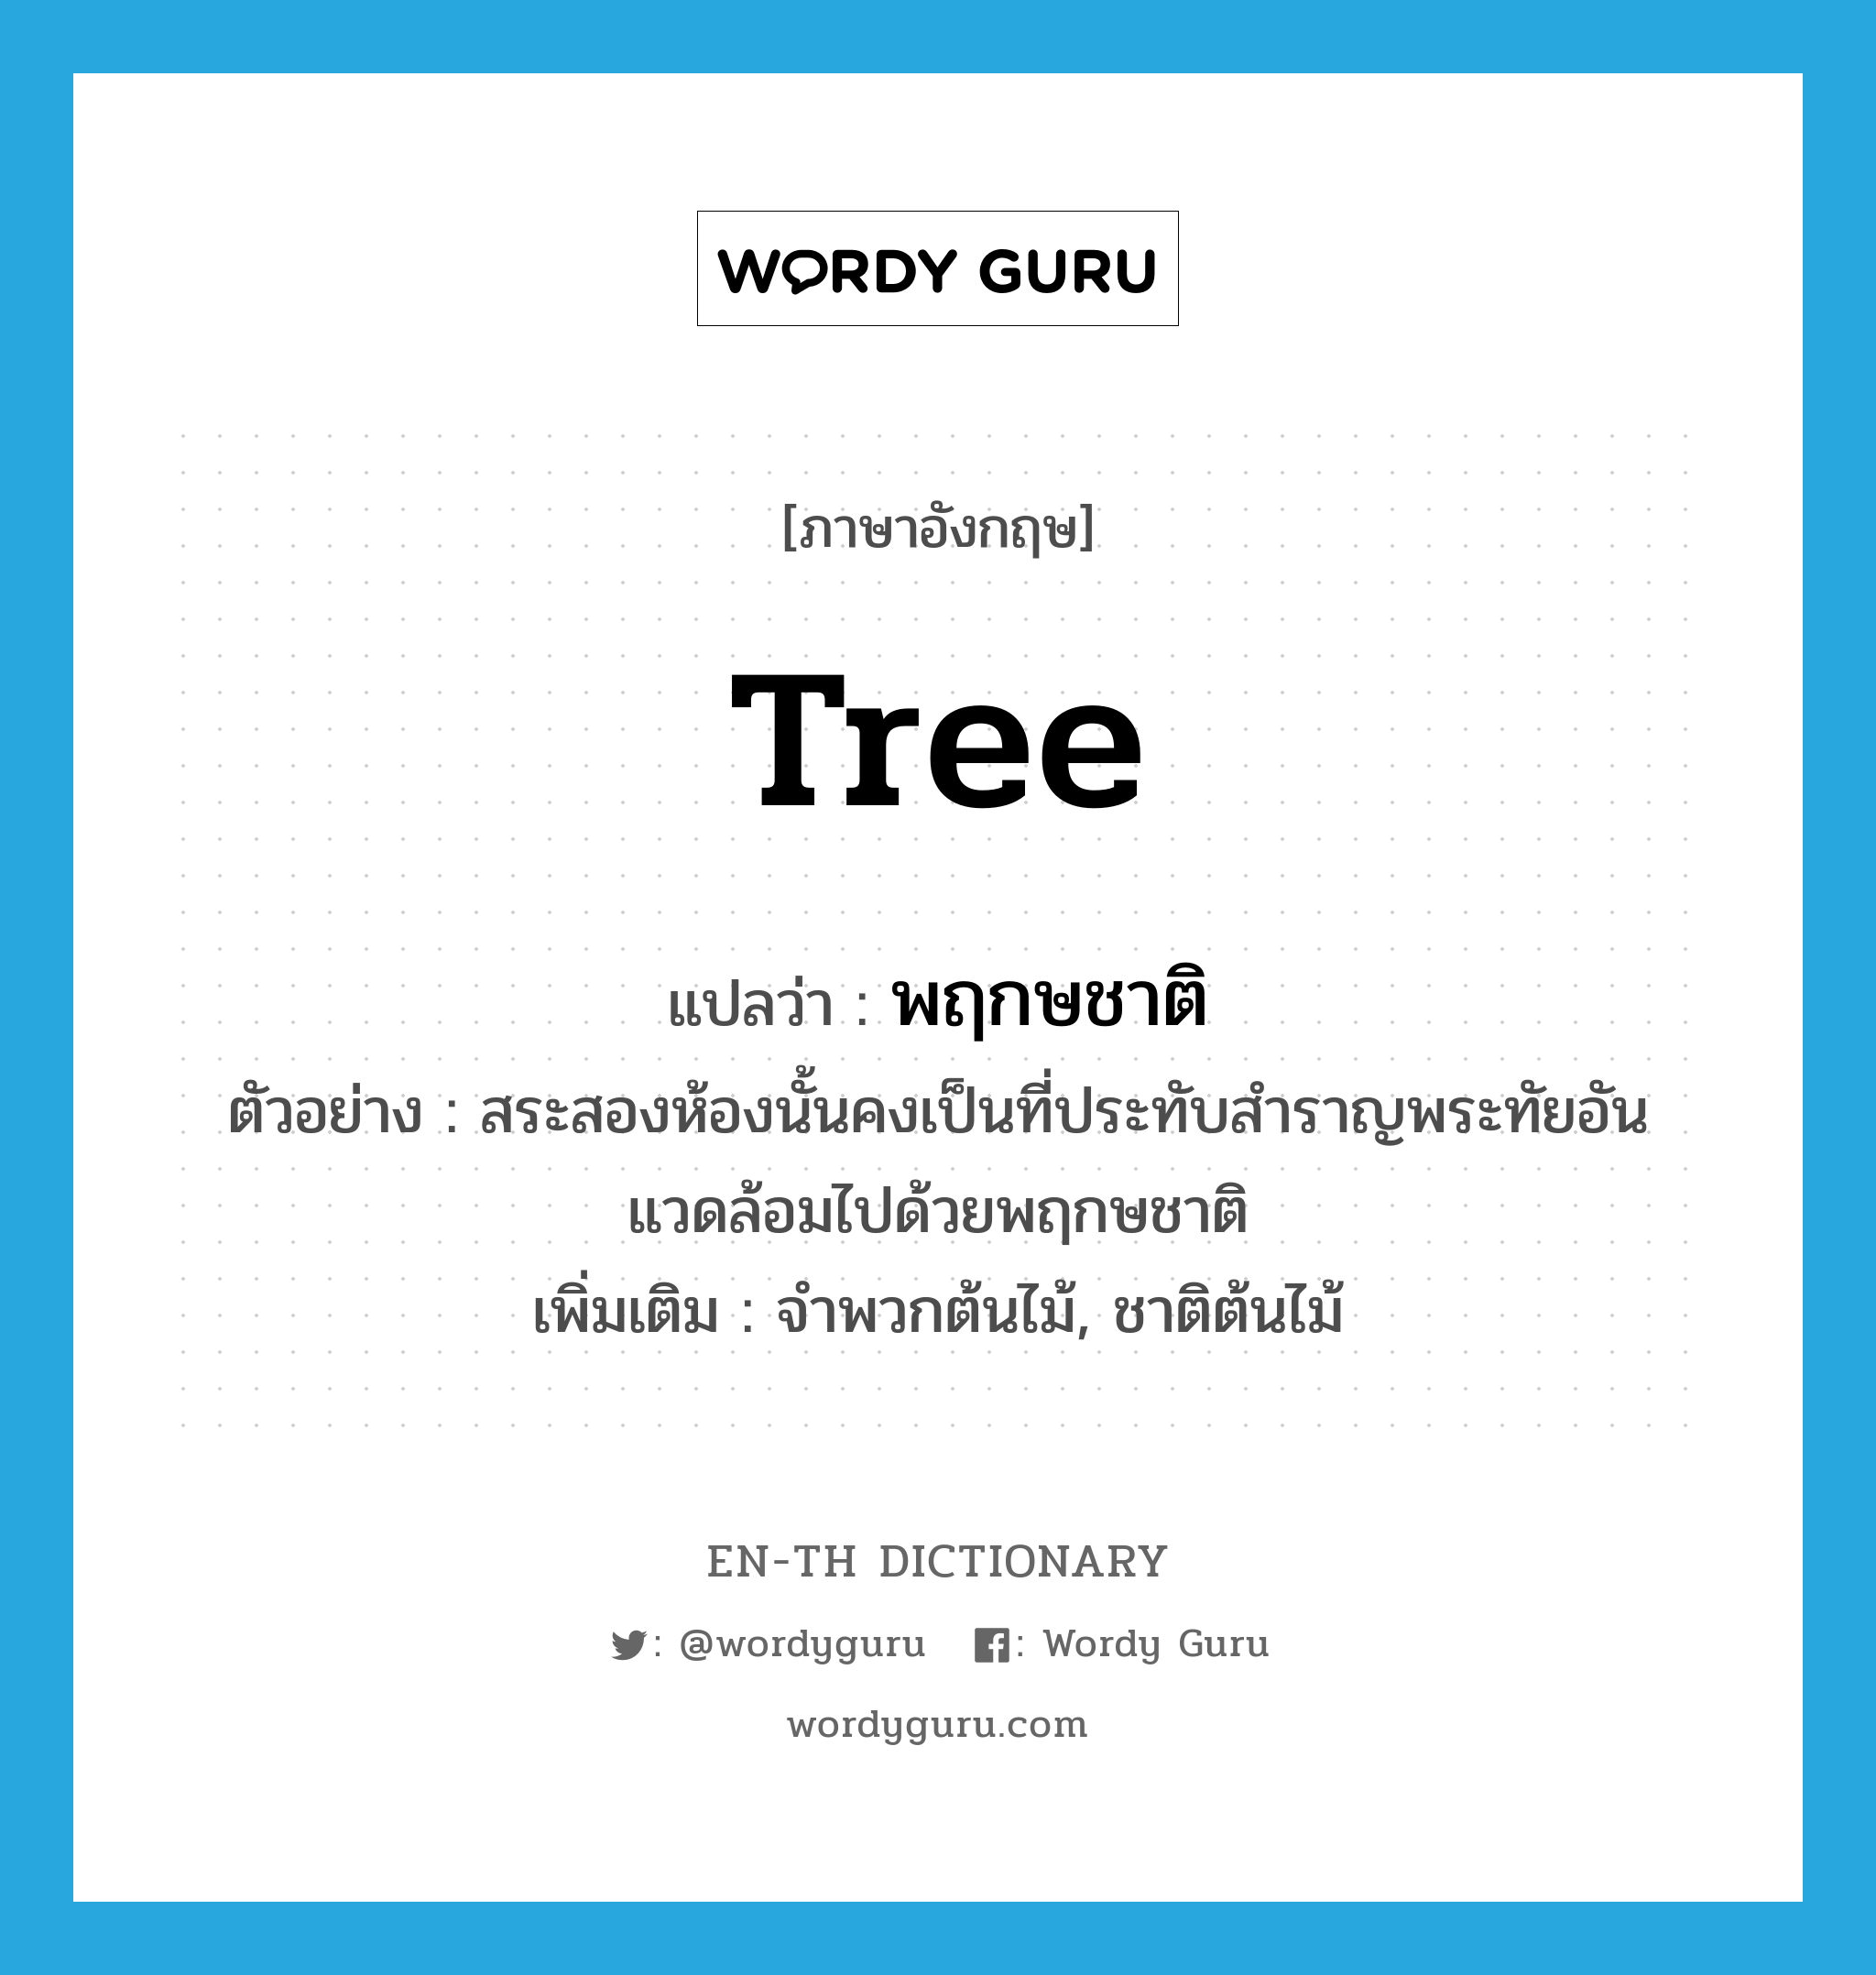 tree แปลว่า?, คำศัพท์ภาษาอังกฤษ tree แปลว่า พฤกษชาติ ประเภท N ตัวอย่าง สระสองห้องนั้นคงเป็นที่ประทับสำราญพระทัยอันแวดล้อมไปด้วยพฤกษชาติ เพิ่มเติม จำพวกต้นไม้, ชาติต้นไม้ หมวด N